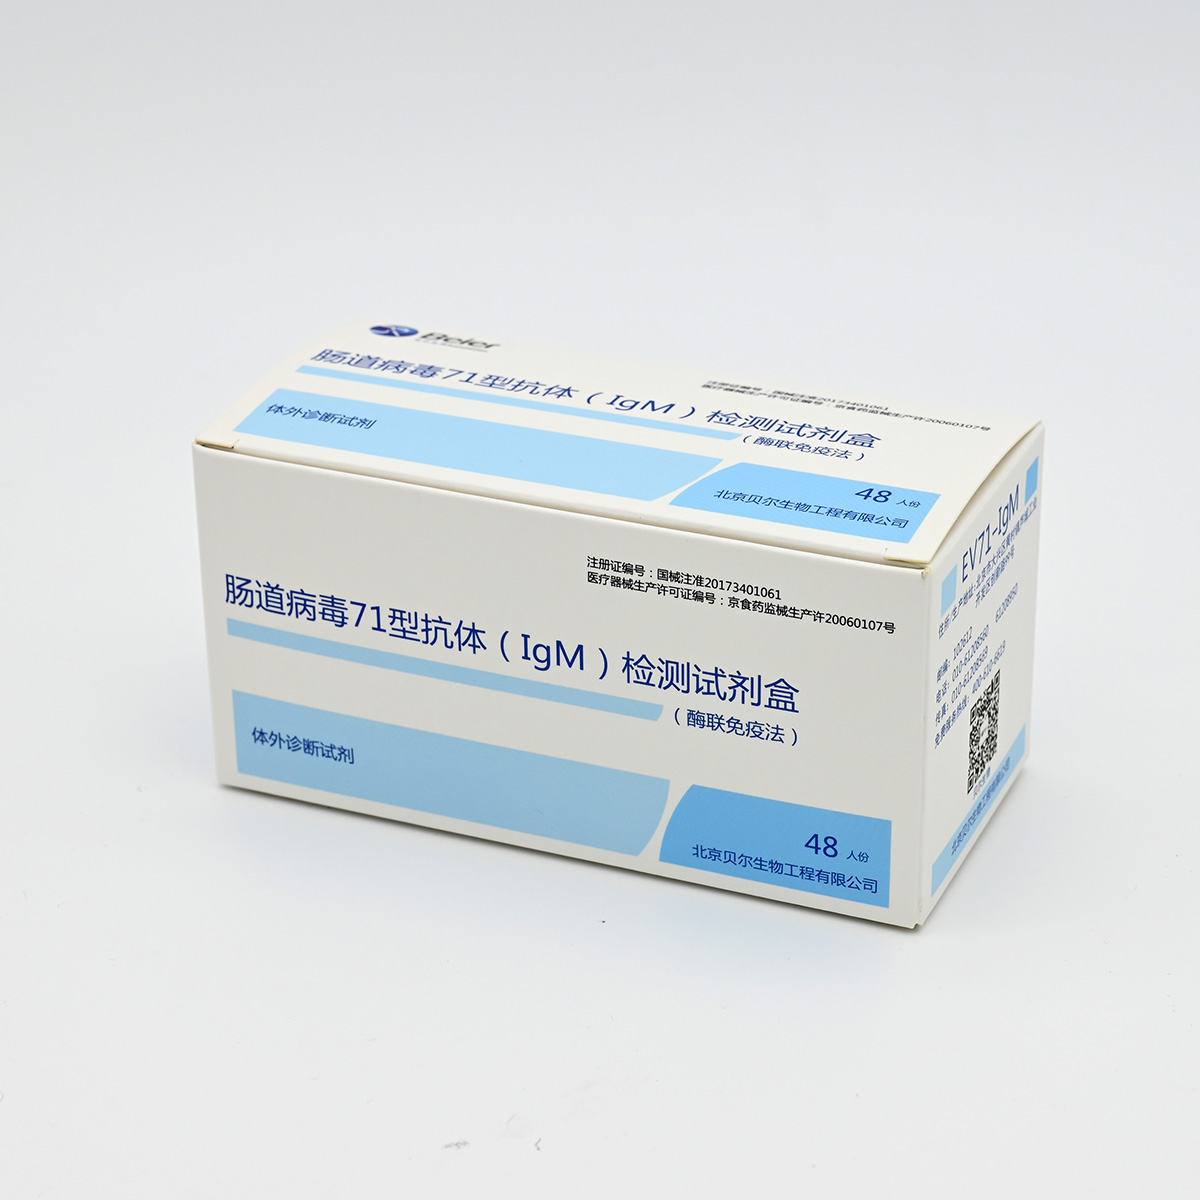 【贝尔】肠道病毒71型抗体(IgM)检测试剂盒(酶联免疫法)